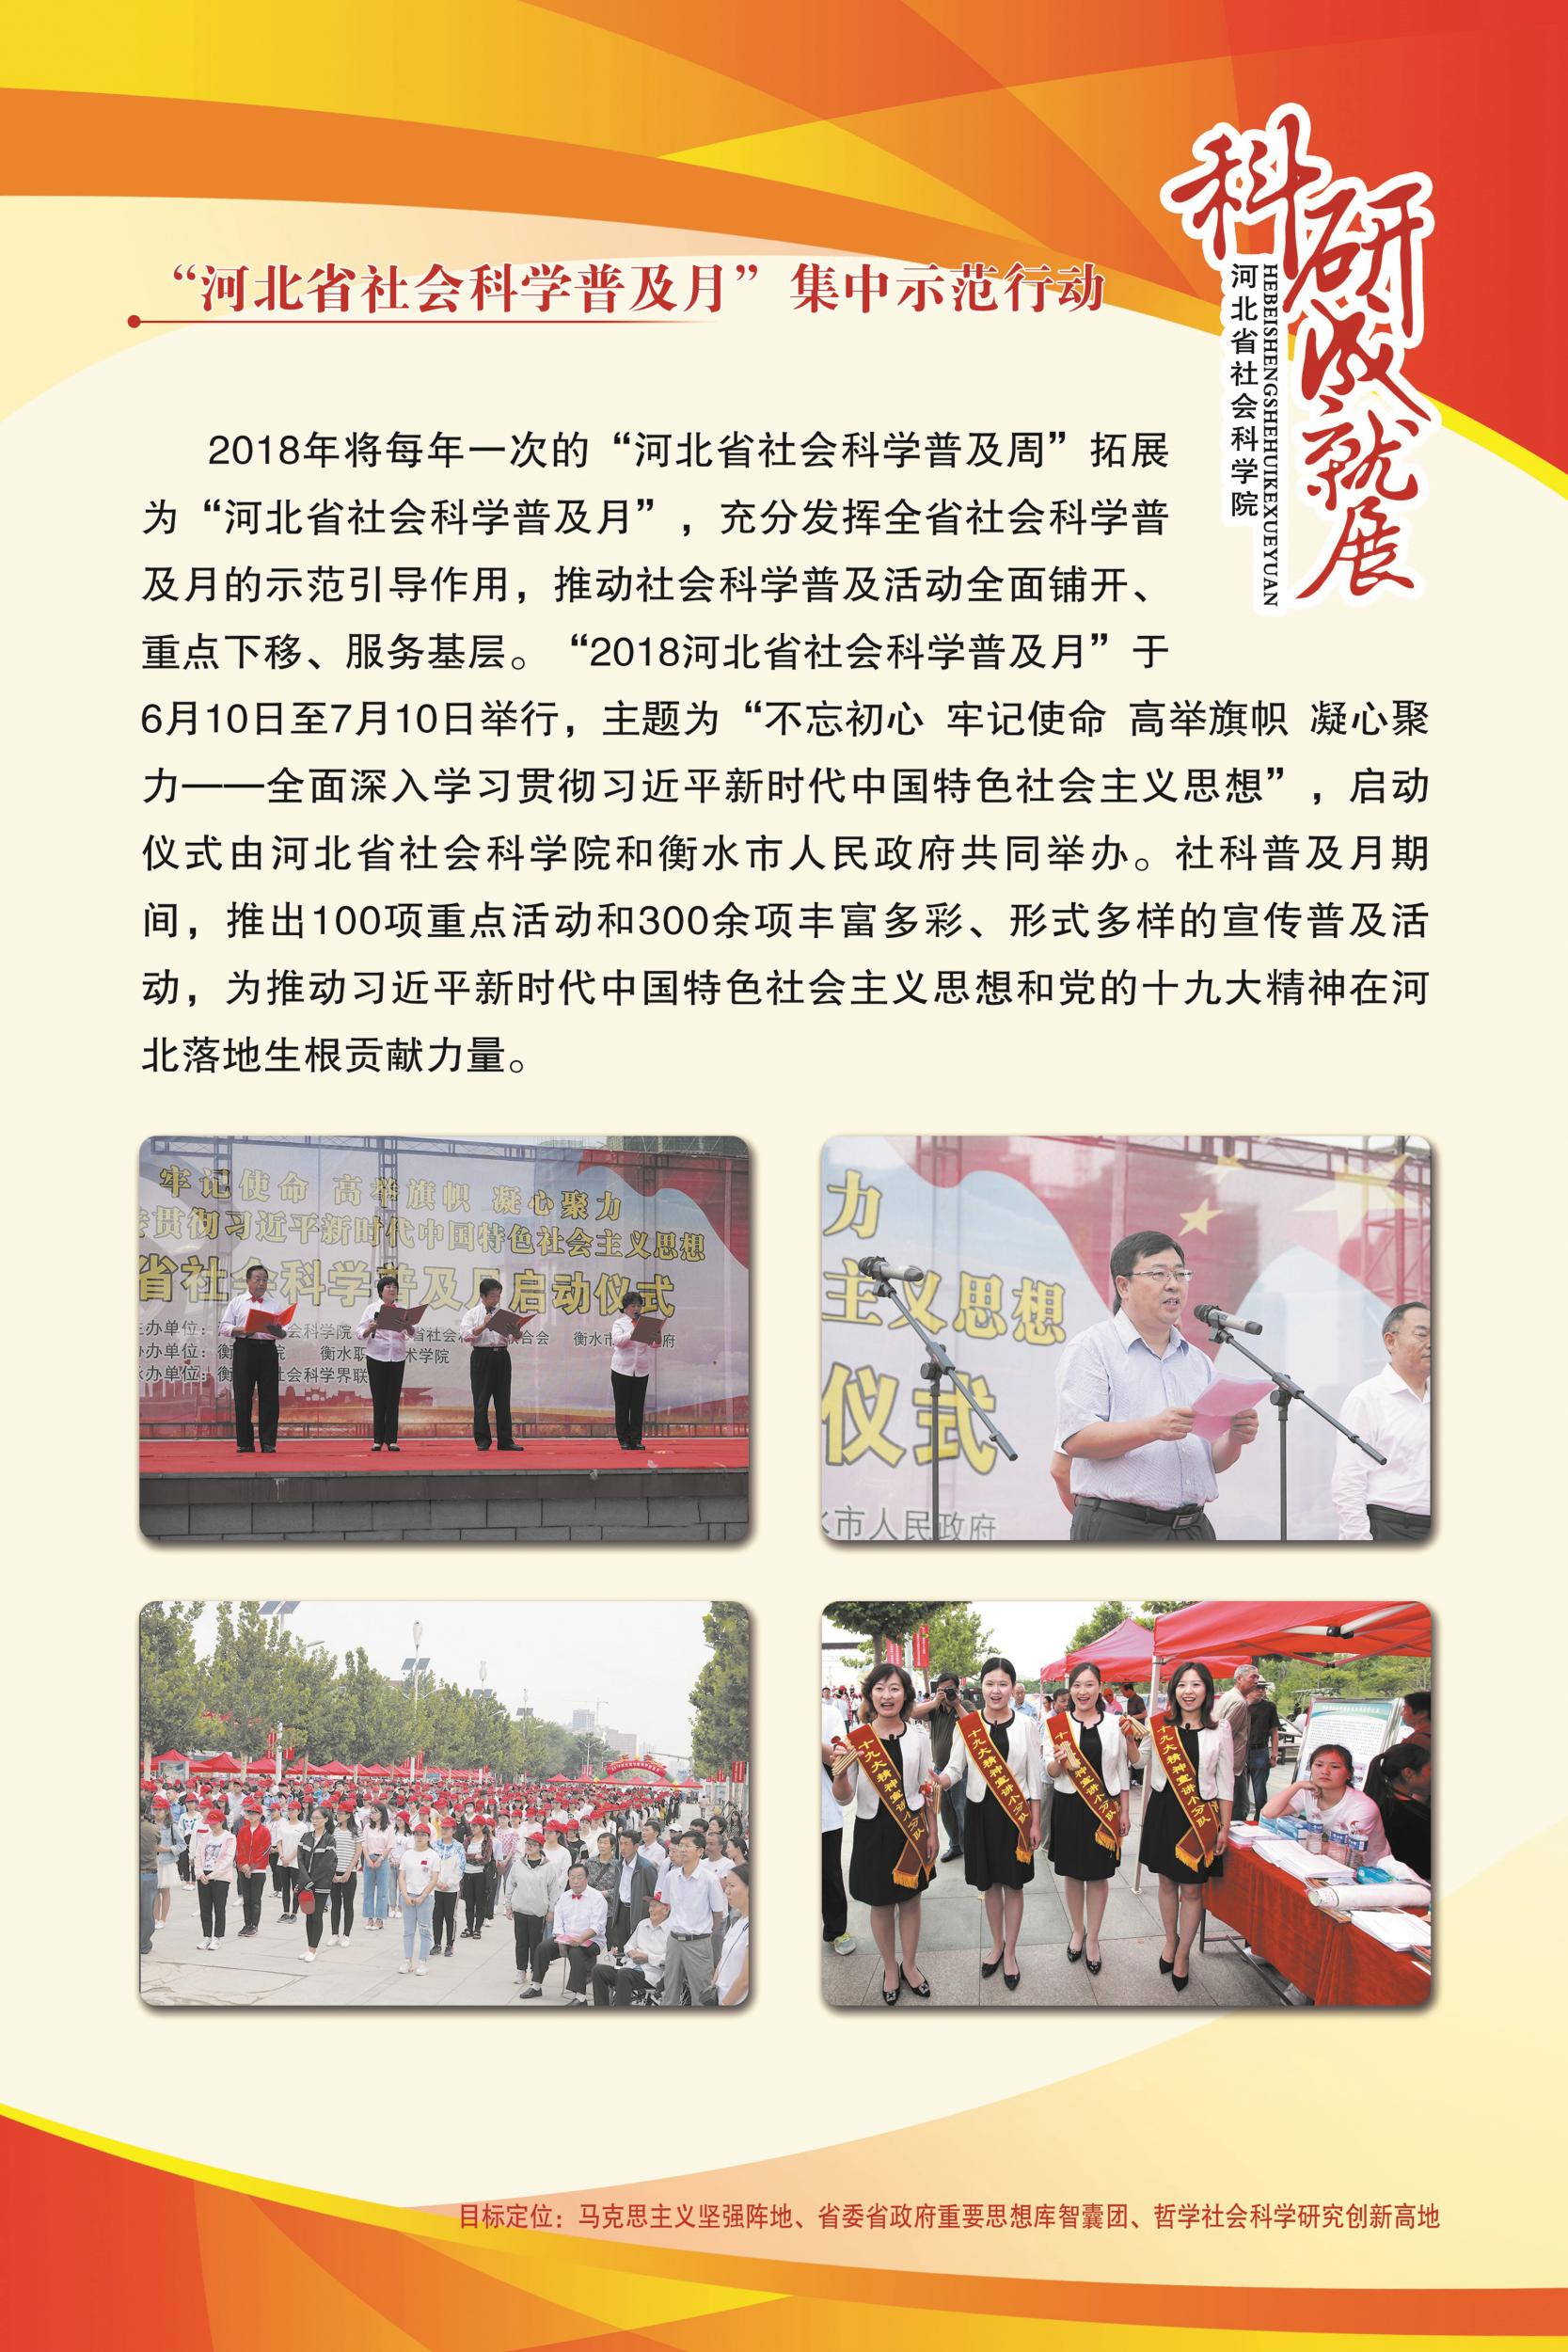 河北省社会科学院展板社会科学普及月集中示范行动、社会科学年鉴、学术交流